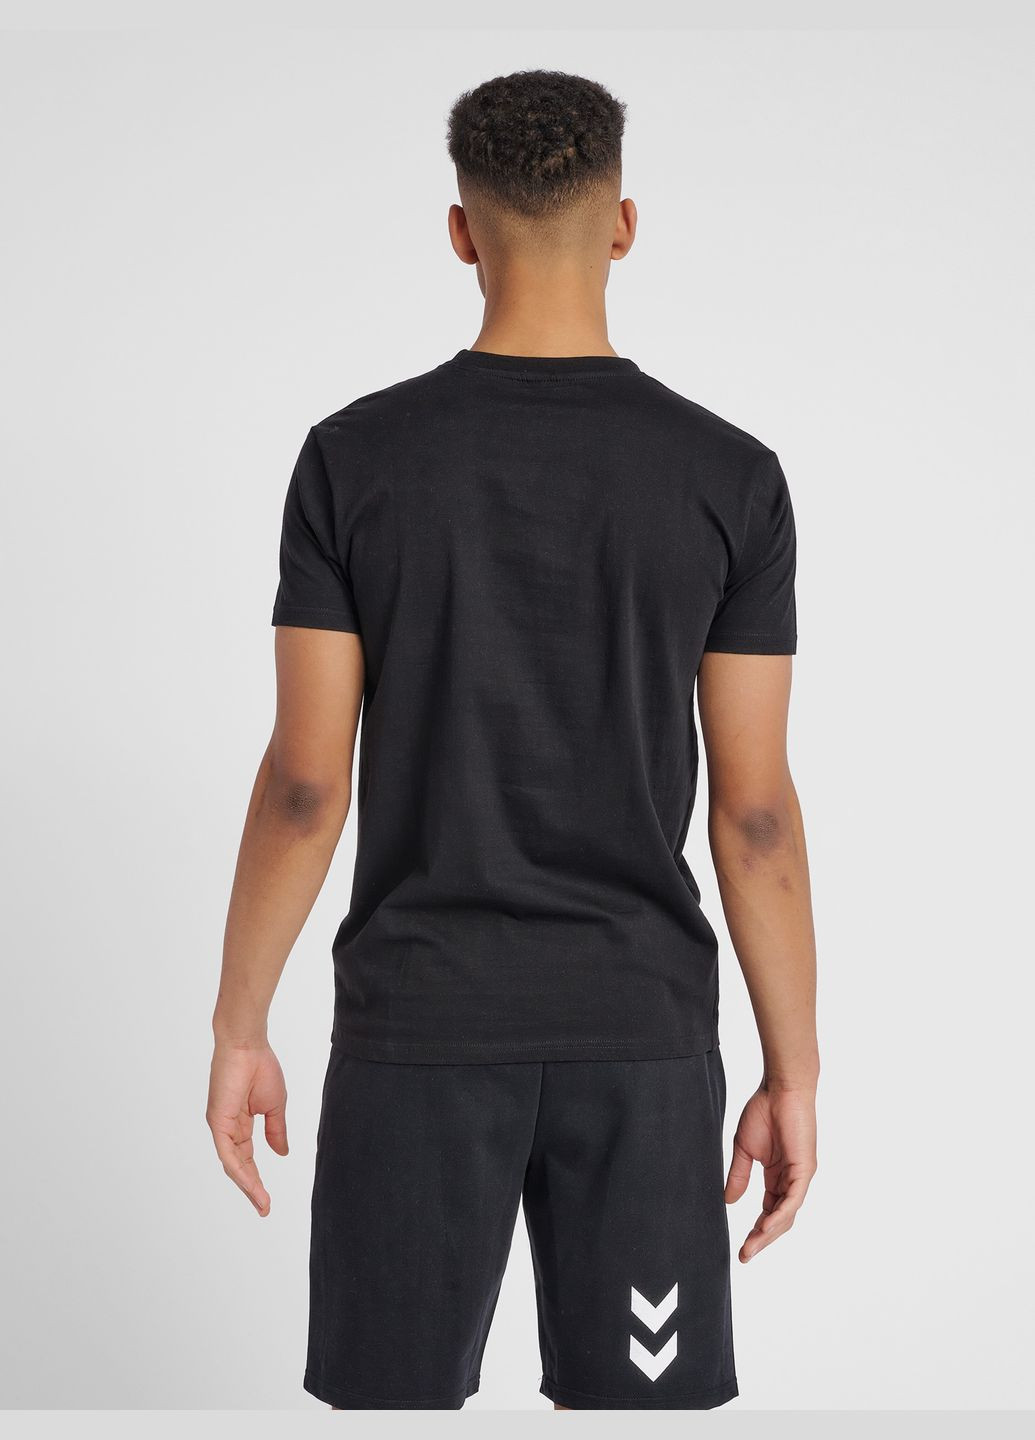 Чорна спортивна футболка Hummel